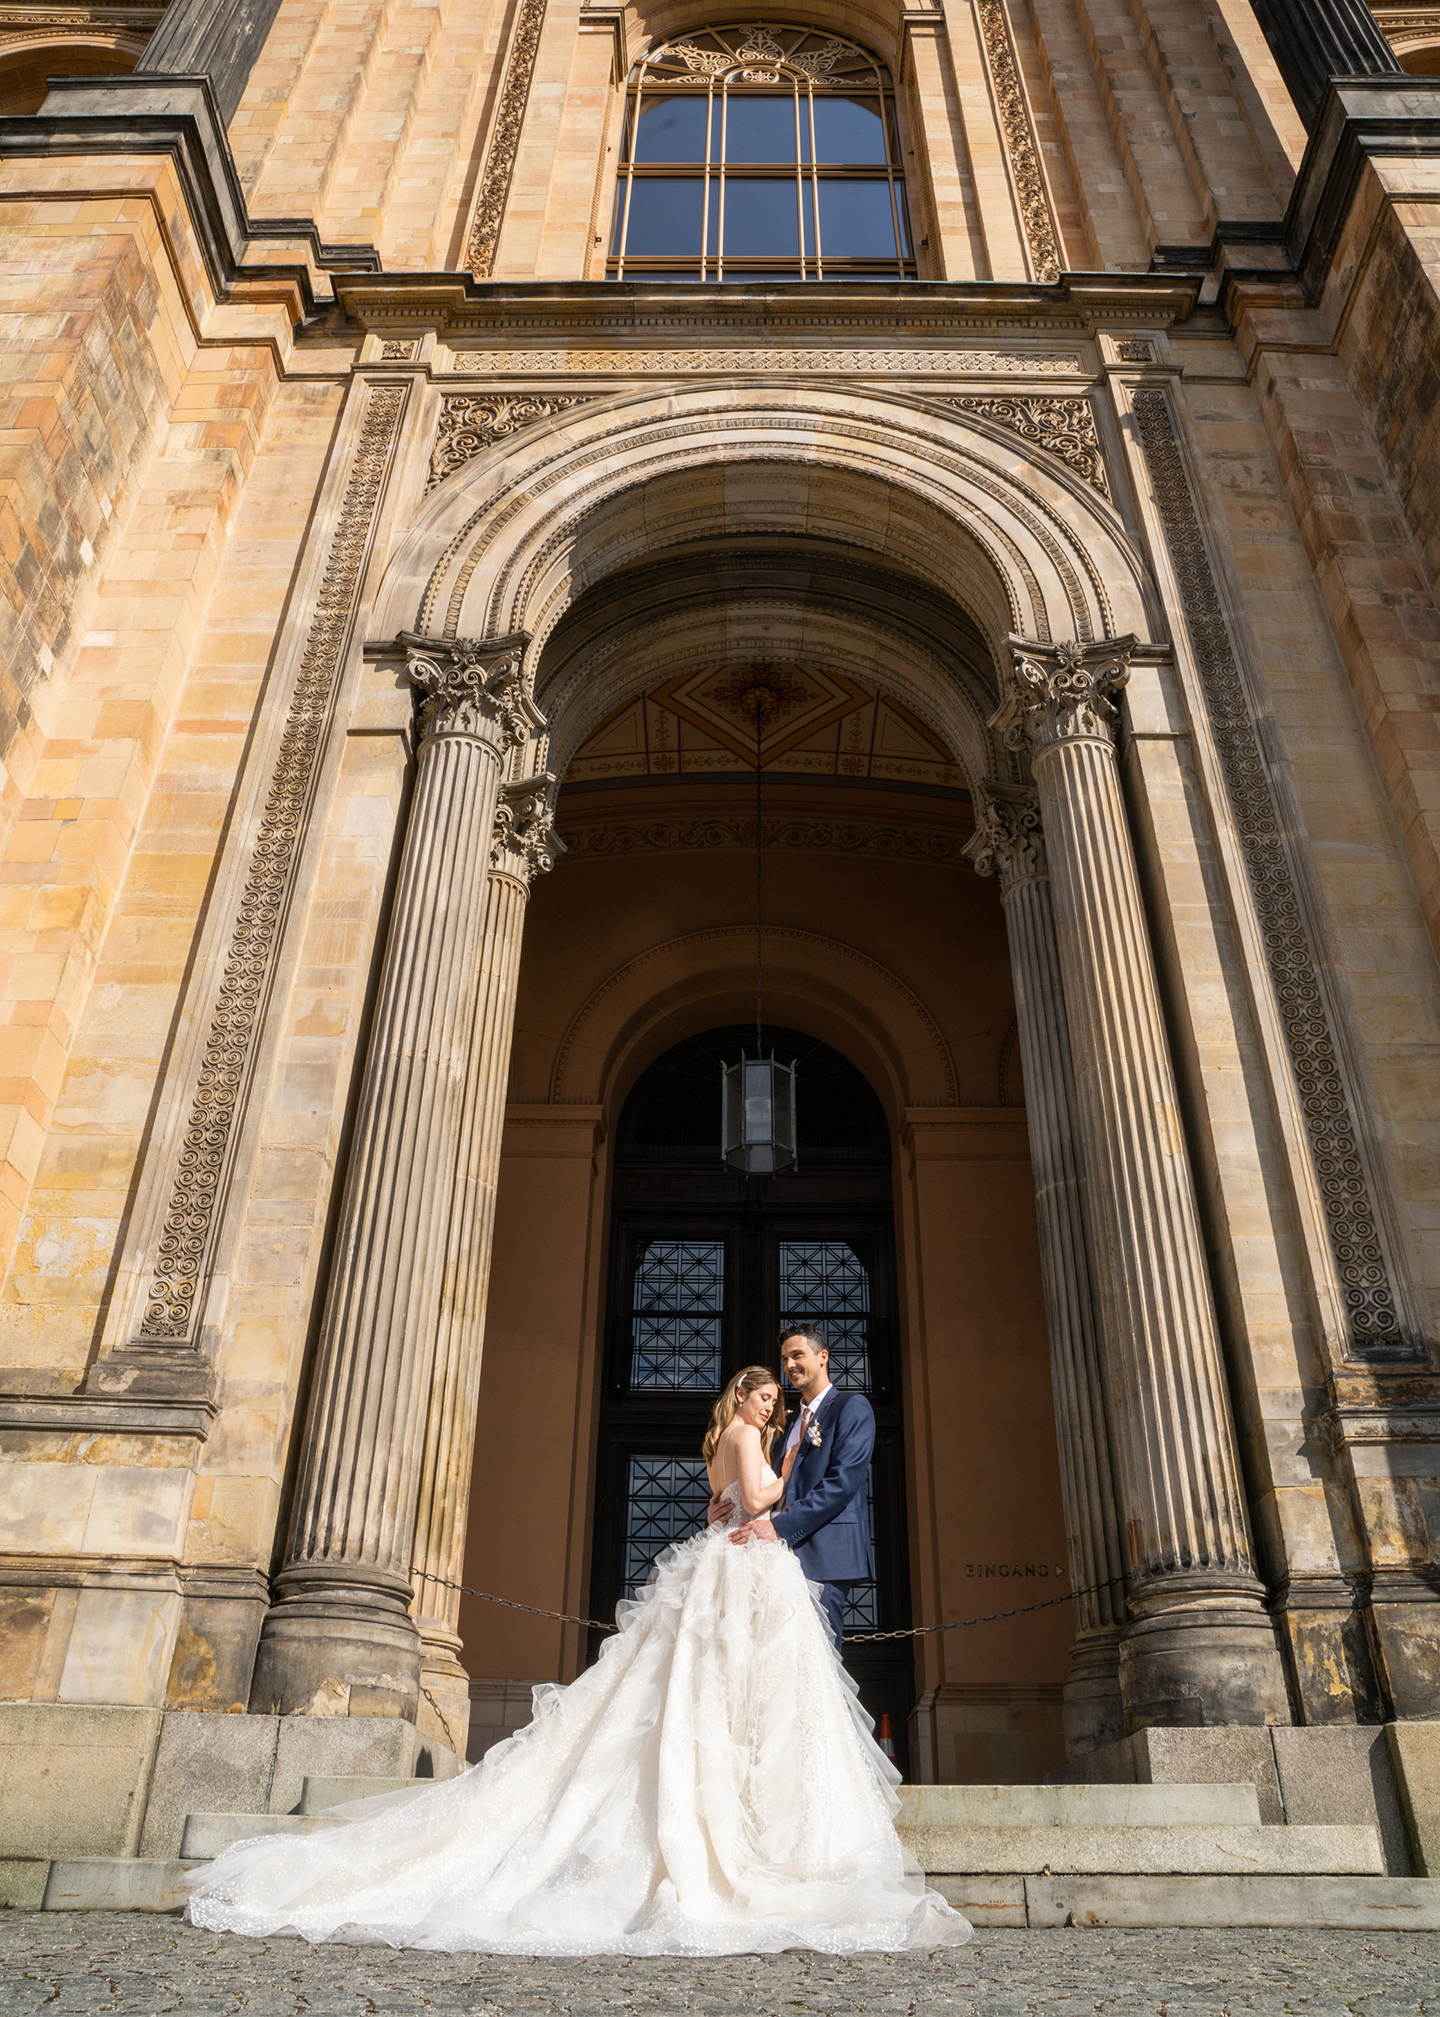 Das Hochzeitspaar bestehend aus Braut und Bräutigam steht vor einer beeindruckenden Architektur, in der die Trauung stattfindet. Vor der imposanten Tür posieren sie für Fotos.